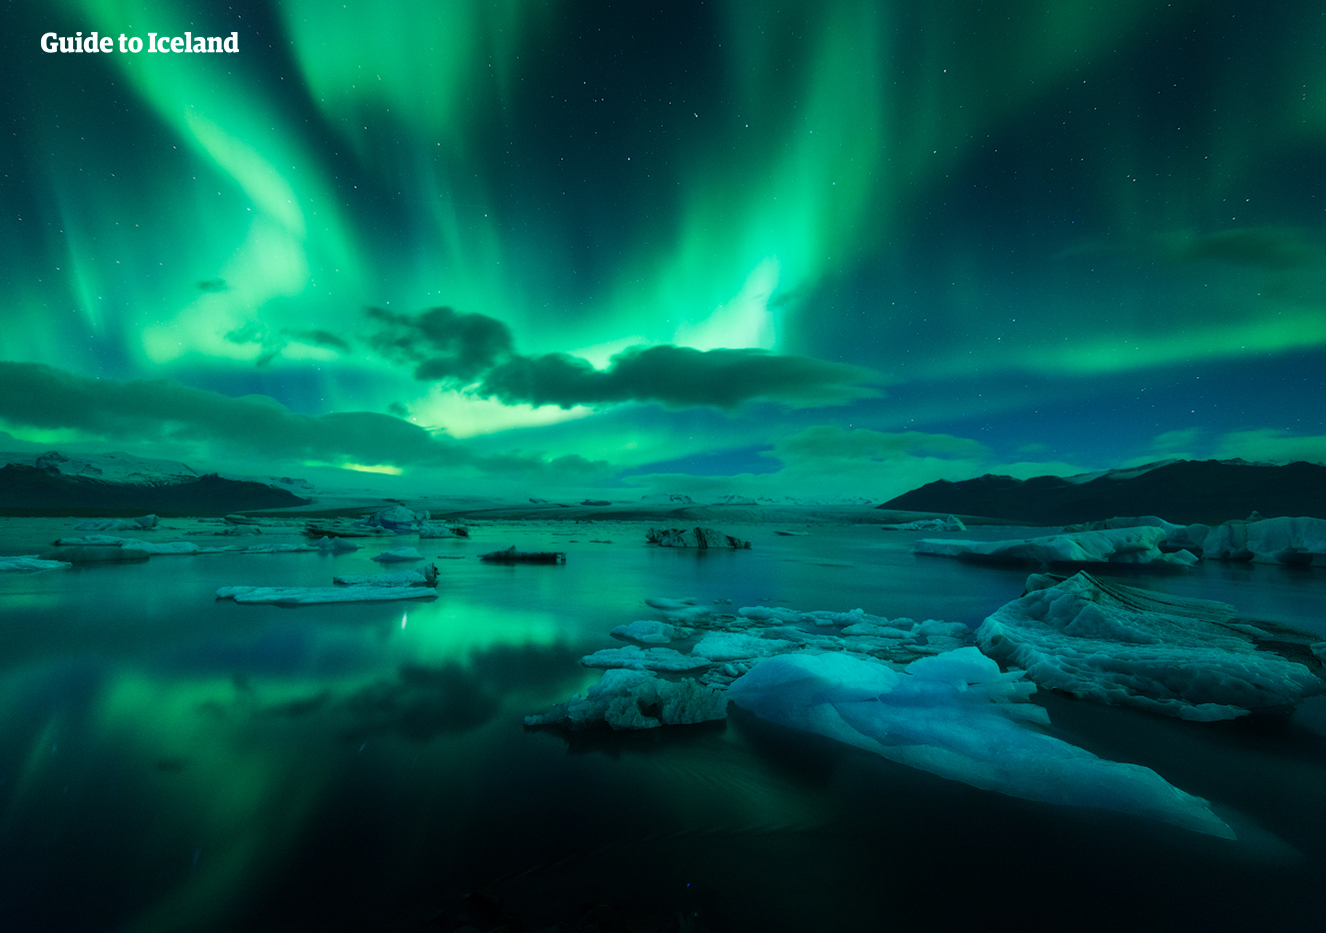 8일 겨울 아이슬란드 링로드 일주 - 가이드와 함께하는 오로라 탐험